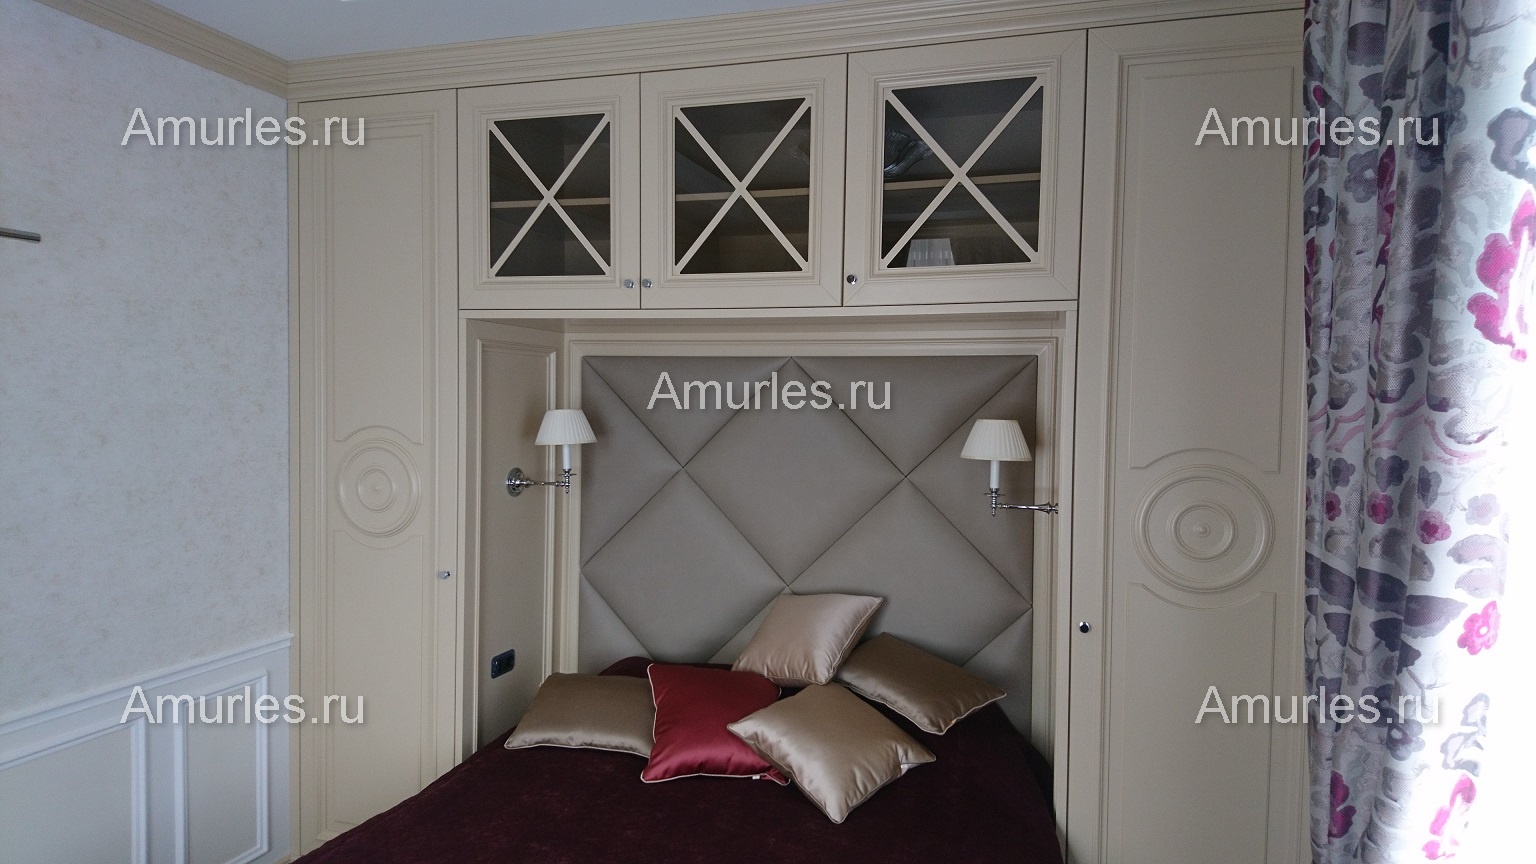 Панели встроенные между шкафами в спальной комнате в классическом стиле